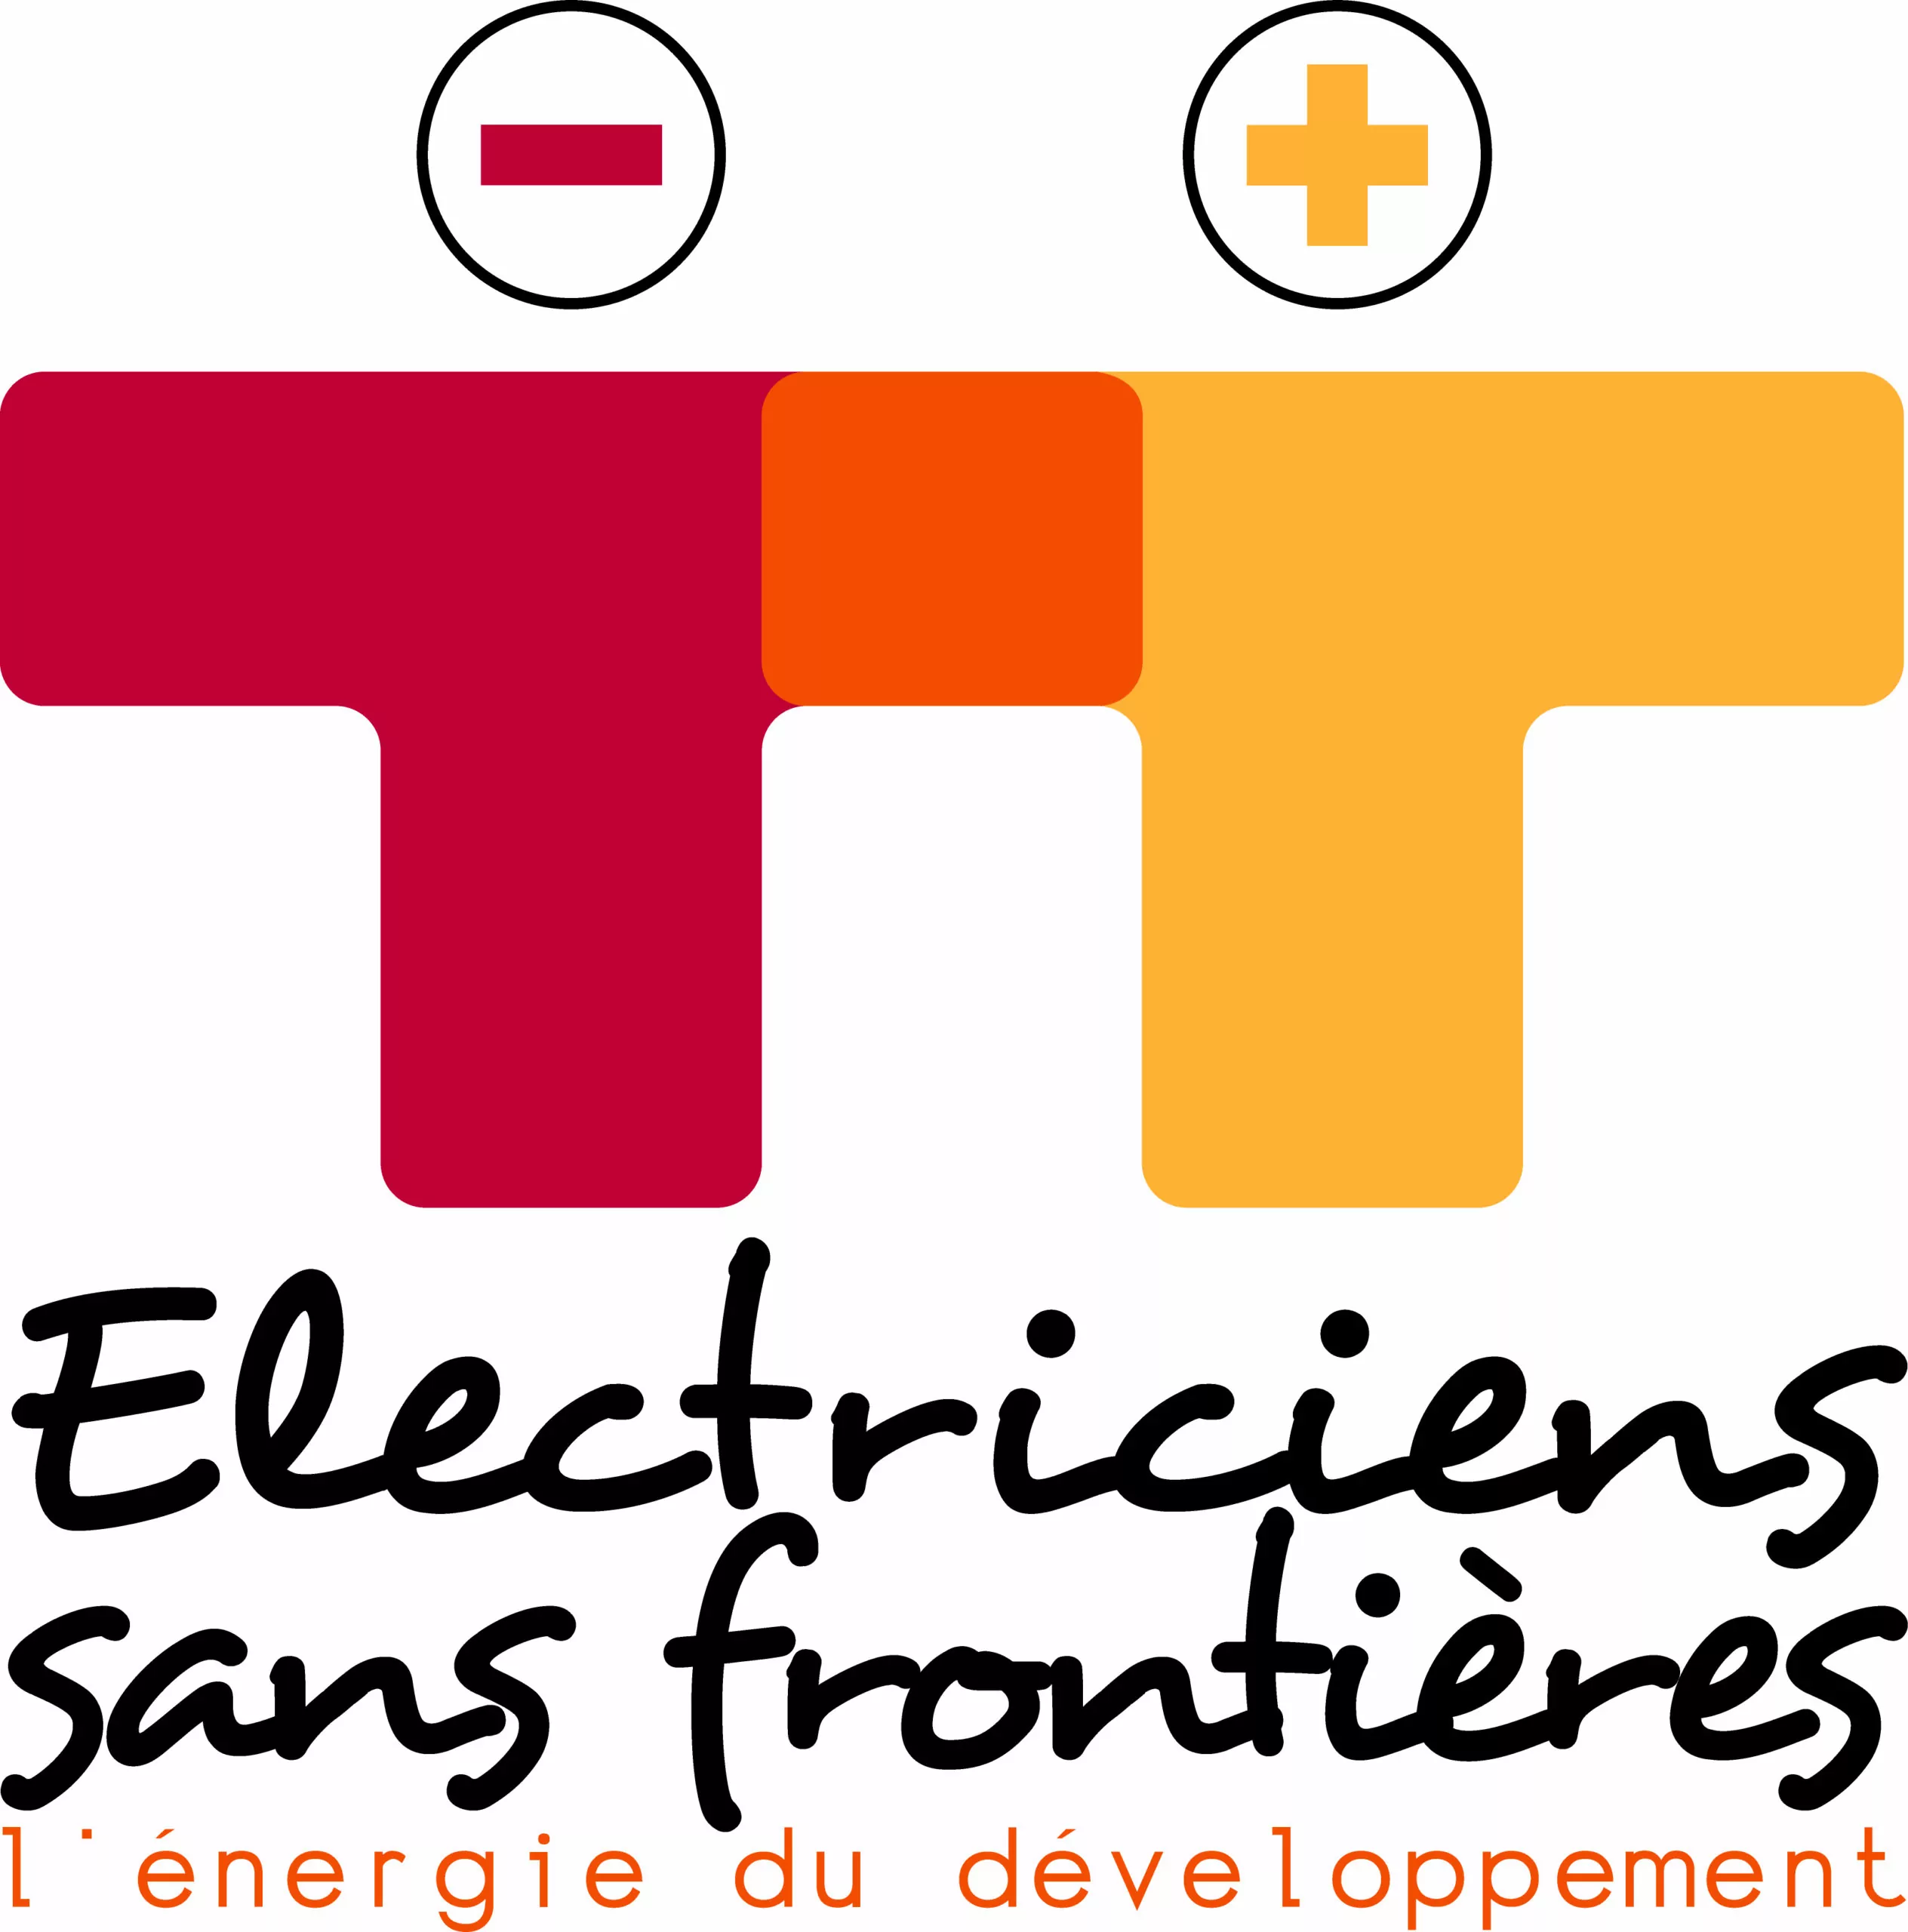 Electriciens sans frontières recherche un(e) chargé(e) de gestion administrative, France